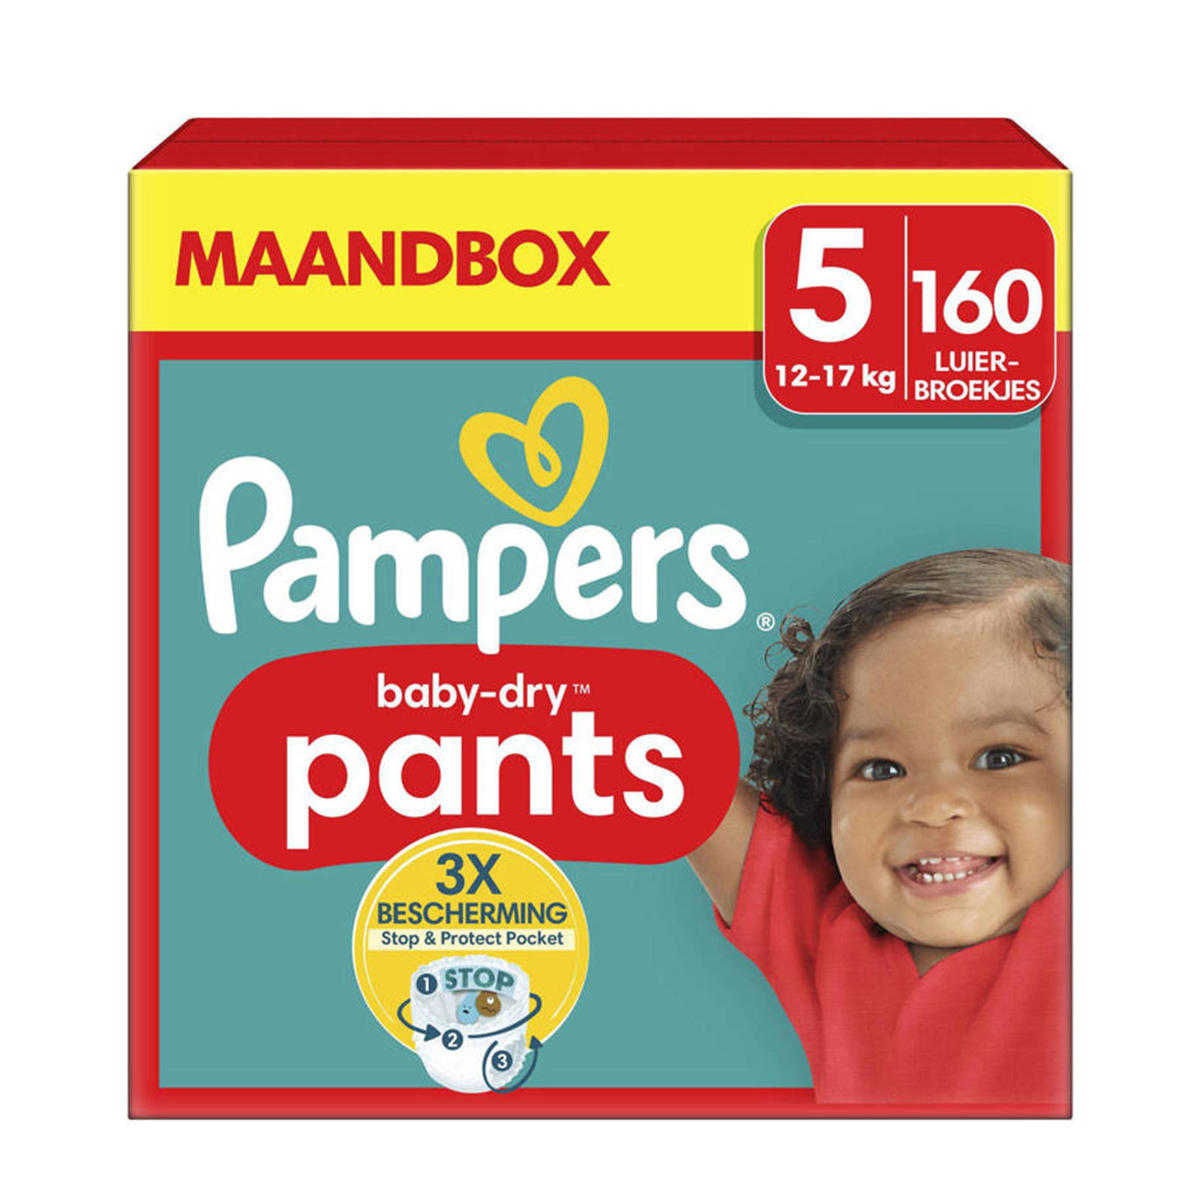 Baby-Dry Pants Maat 5 (12-17kg) - 160 luierbroekjes maandbox | wehkamp